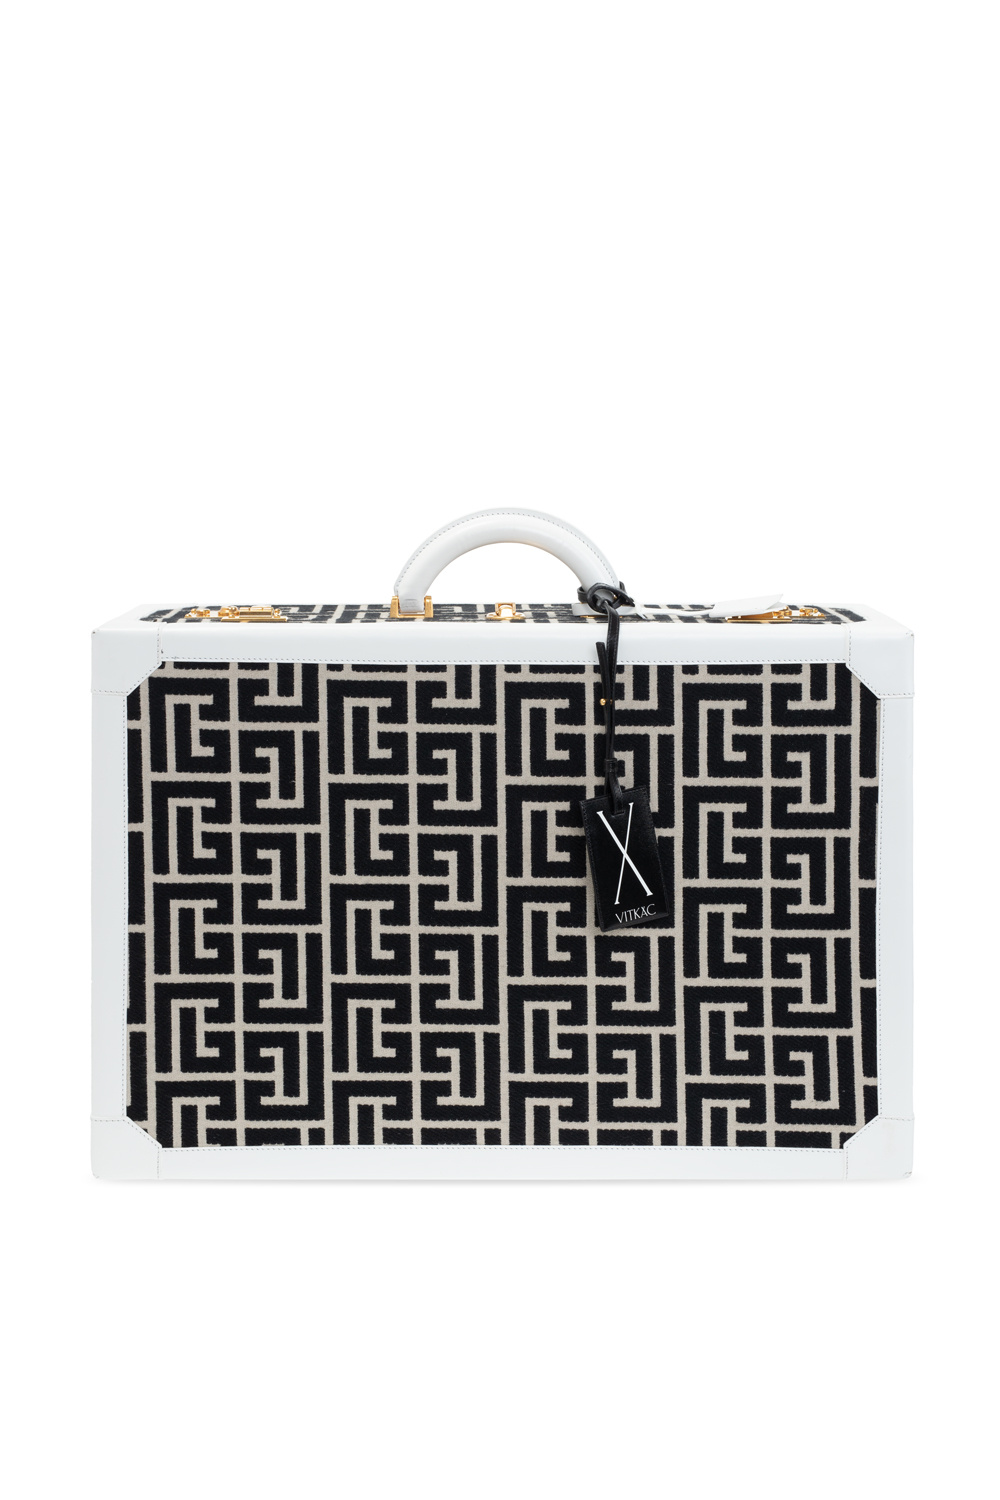 balmain Collab ‘Exclusive for wrap’ suitcase